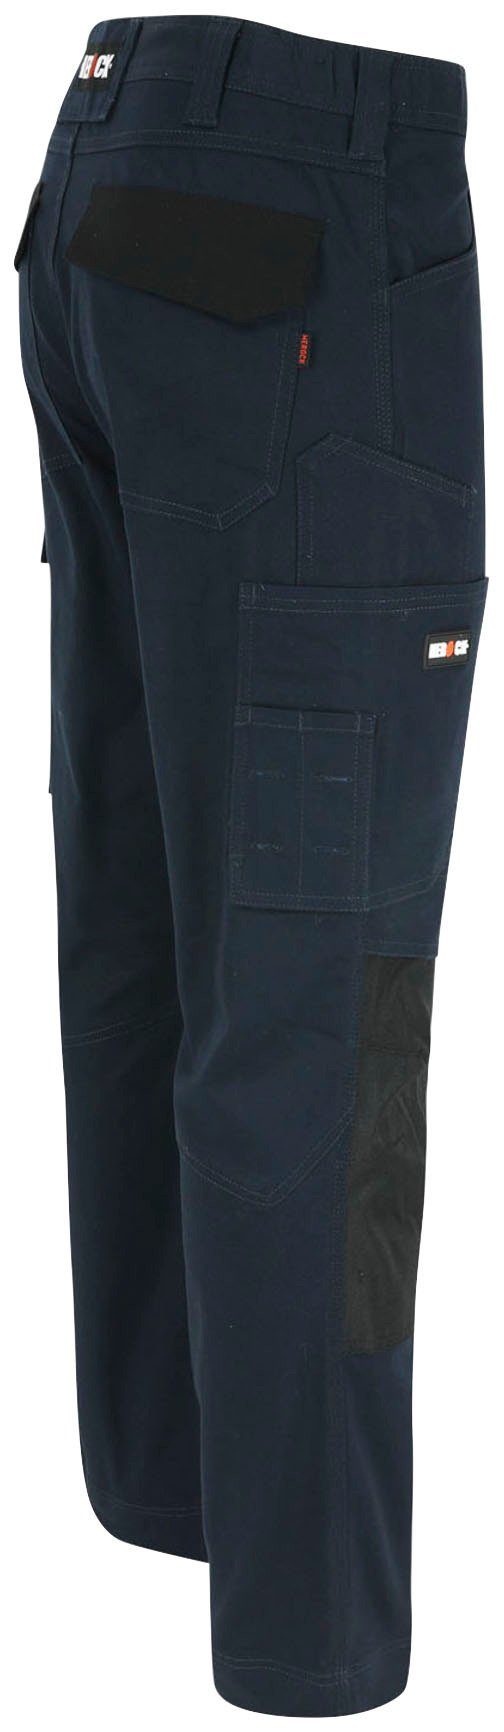 Slim wasserabweisend DERO 2-Wege-Stretch, marine Arbeitshose Passform, Multi-Pocket, Herock Fit